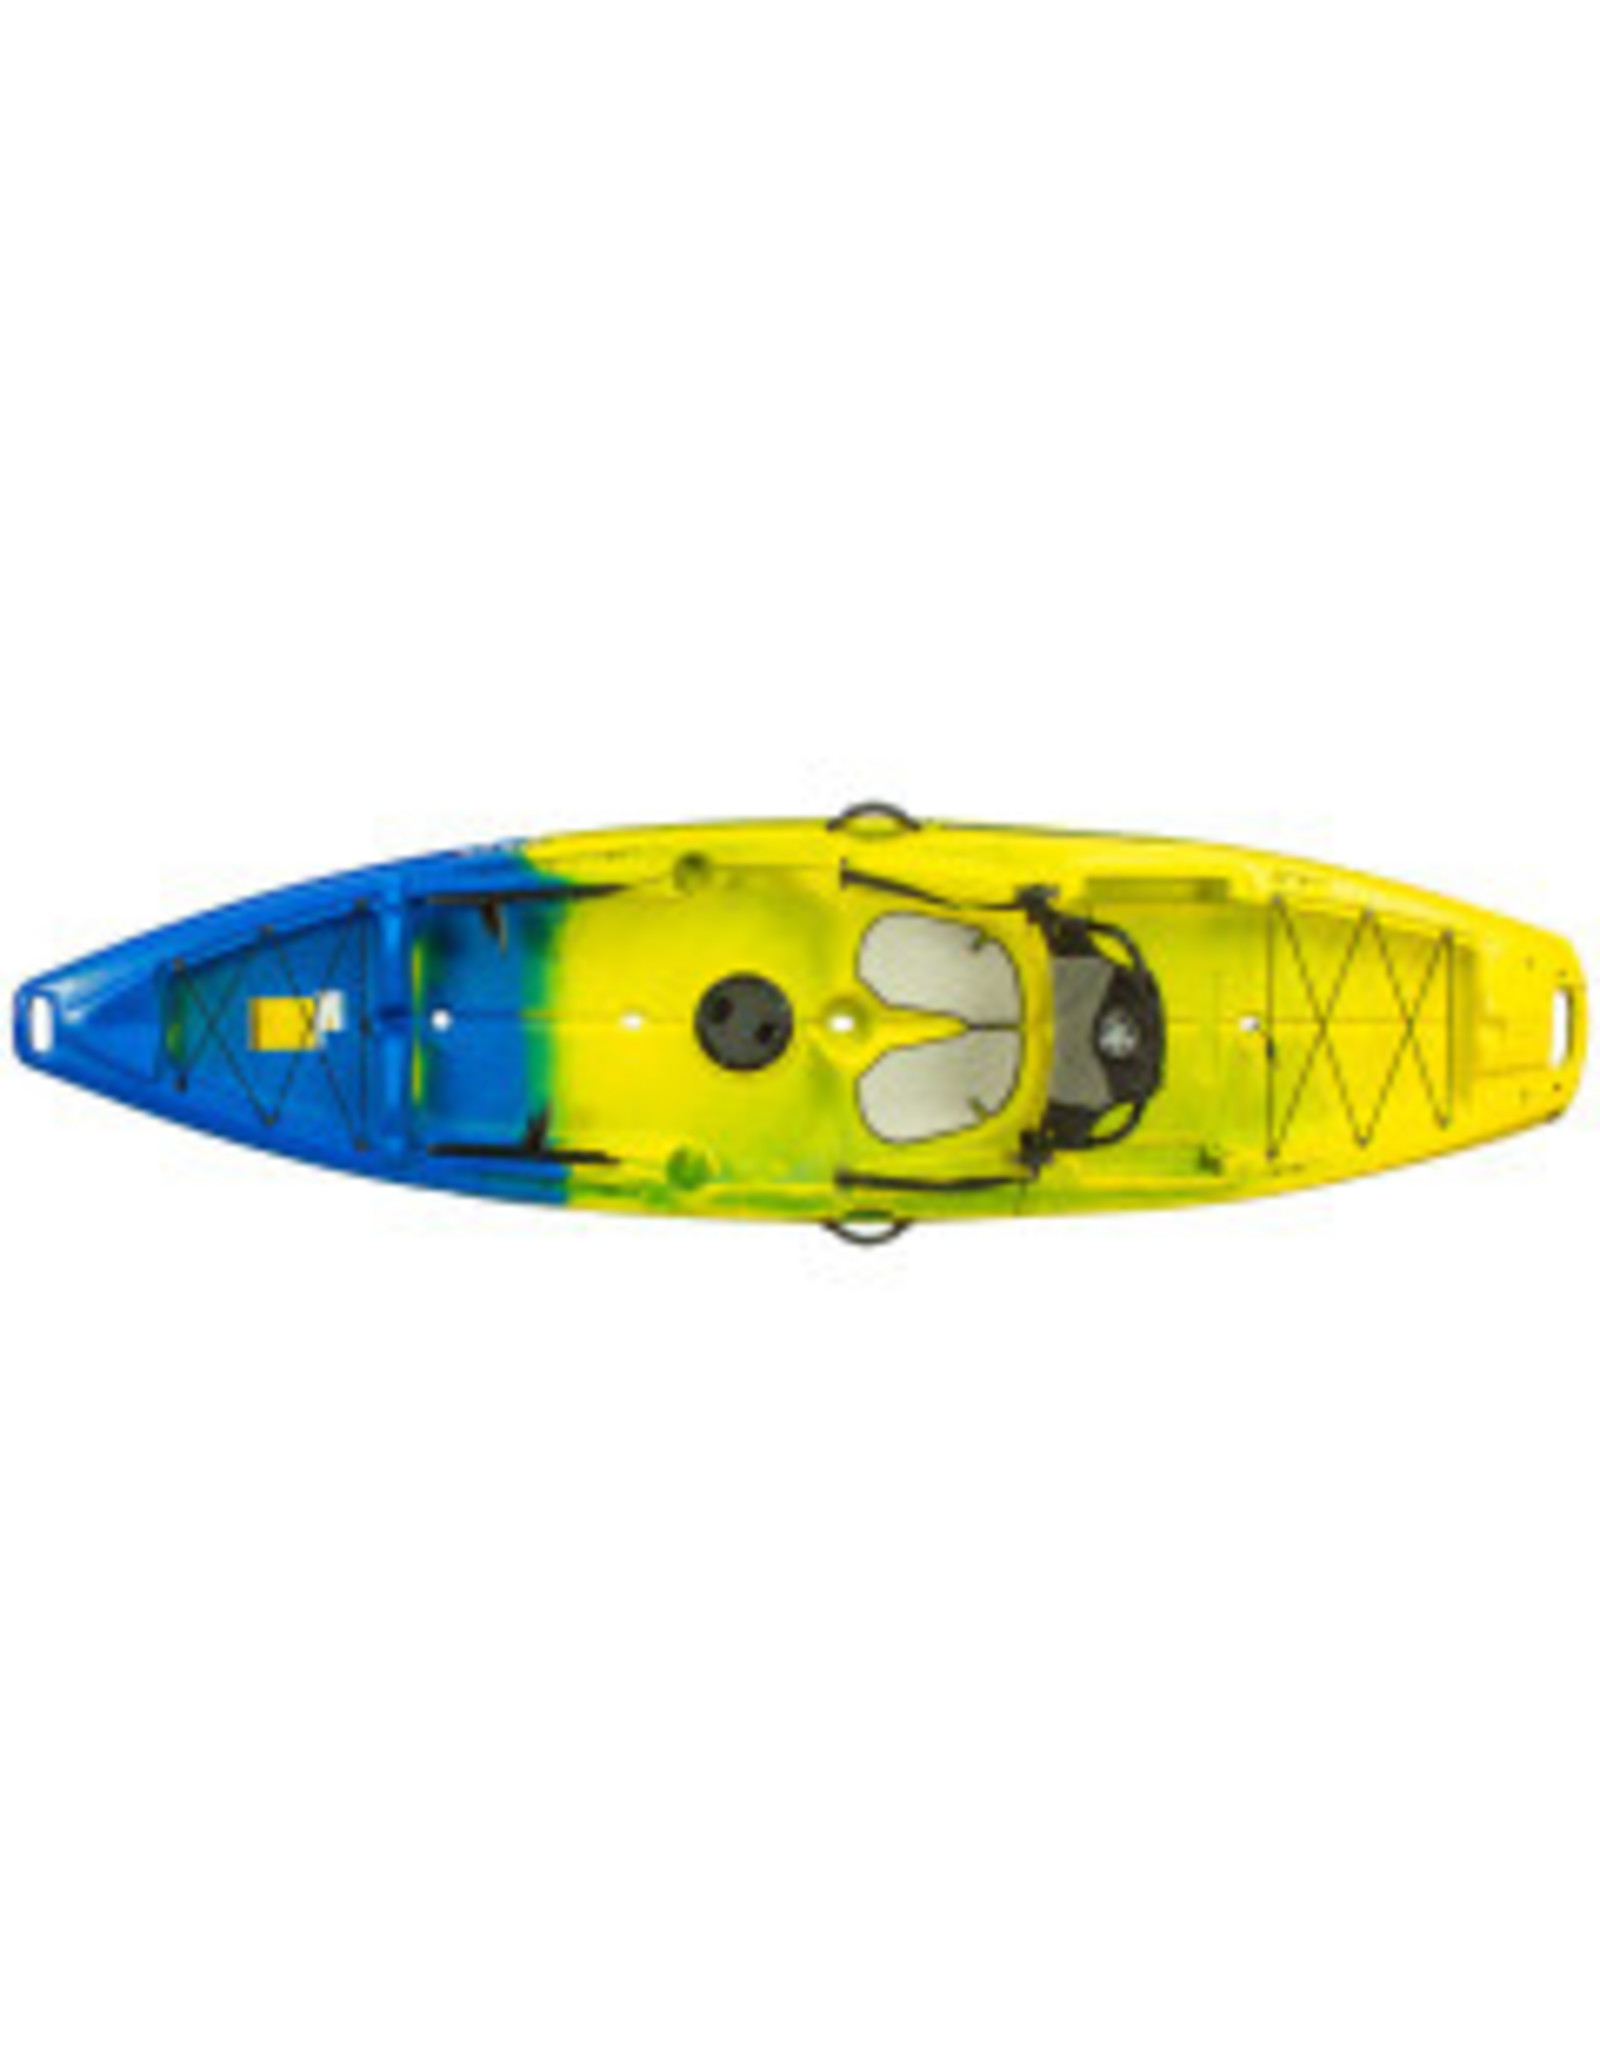 Jackson Kayaks Jackson kayak Staxx